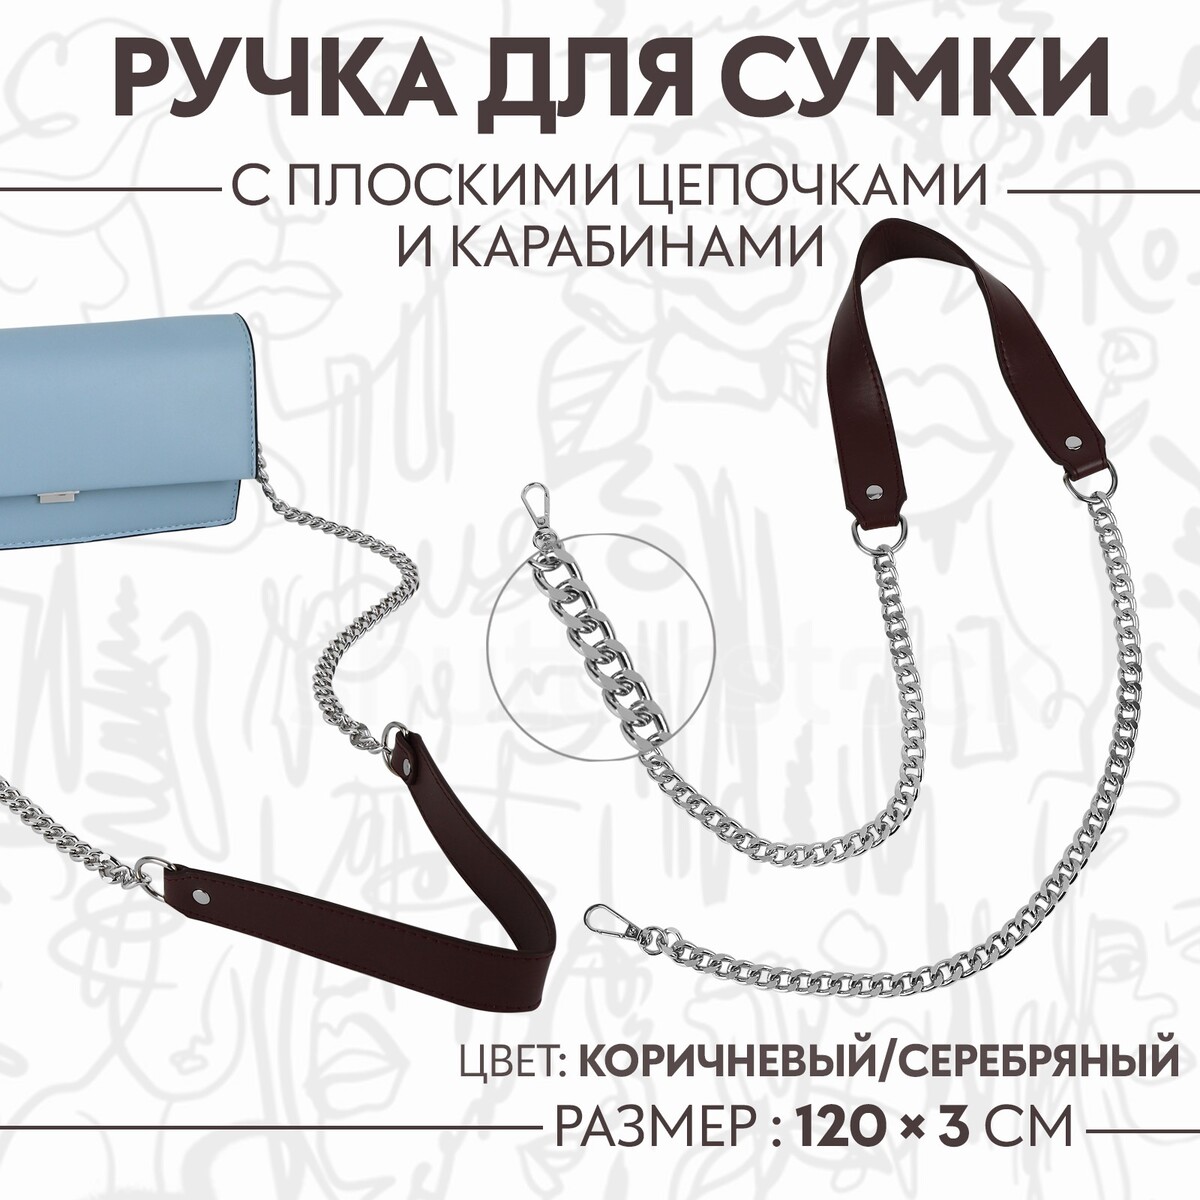 Ручка для сумки, с плоскими цепочками и карабинами, 120 × 3 см, цвет коричневый/серебряный ручка для сумки с цепочками и карабинами 120 × 1 8 см